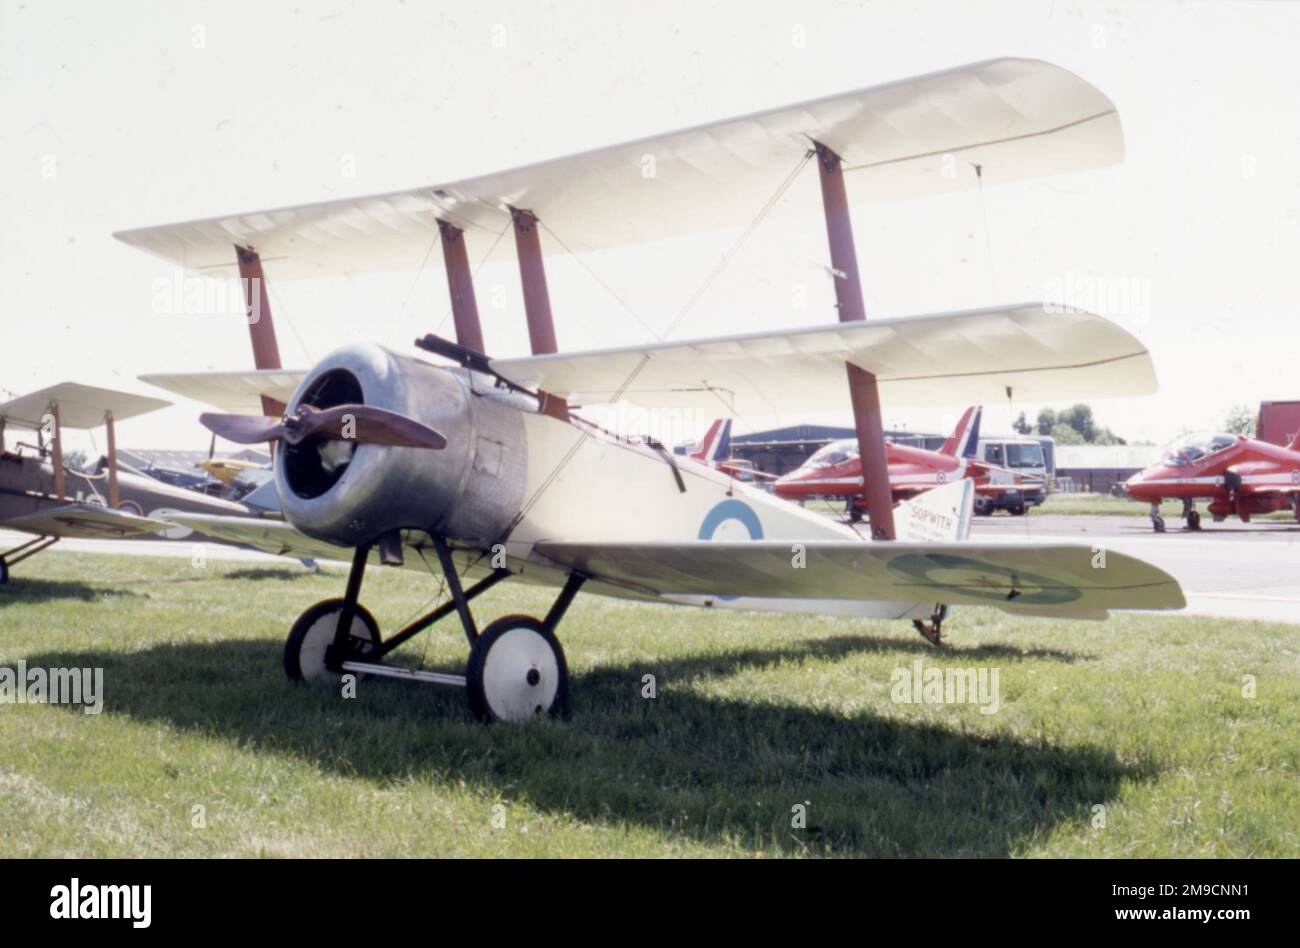 Ein Triflugzeug aus dem Jahr 1915-30 auf einem Flugplatz aus dem 21. Jahrhundert. Stockfoto